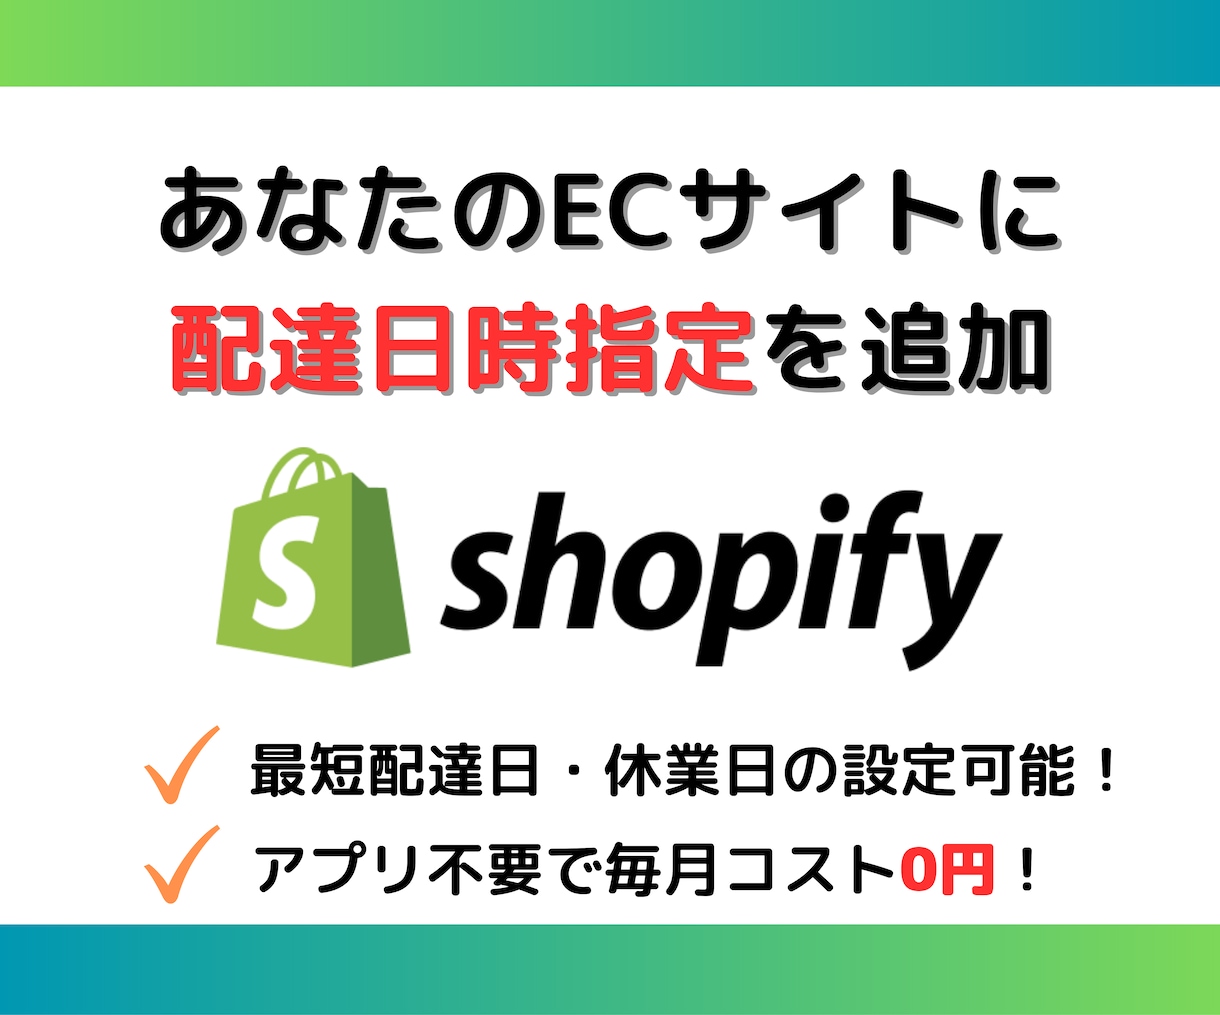 Shopifyに配送日時指定機能を追加します アプリを使わないので、毎月のコストは0円！ イメージ1